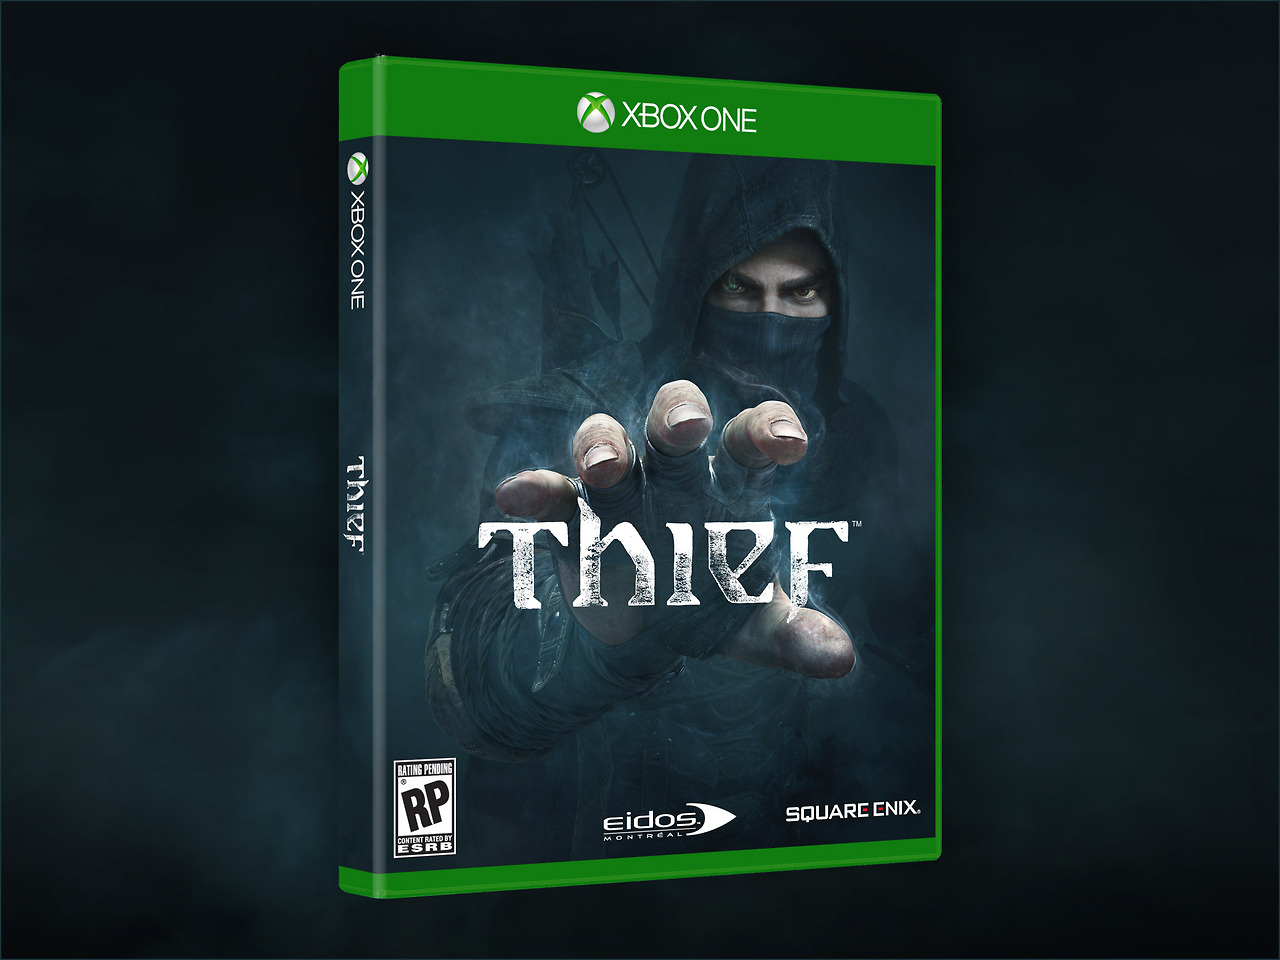 thief boxart xbox one باکس آرت رسمی بازی Thief منتشر شد